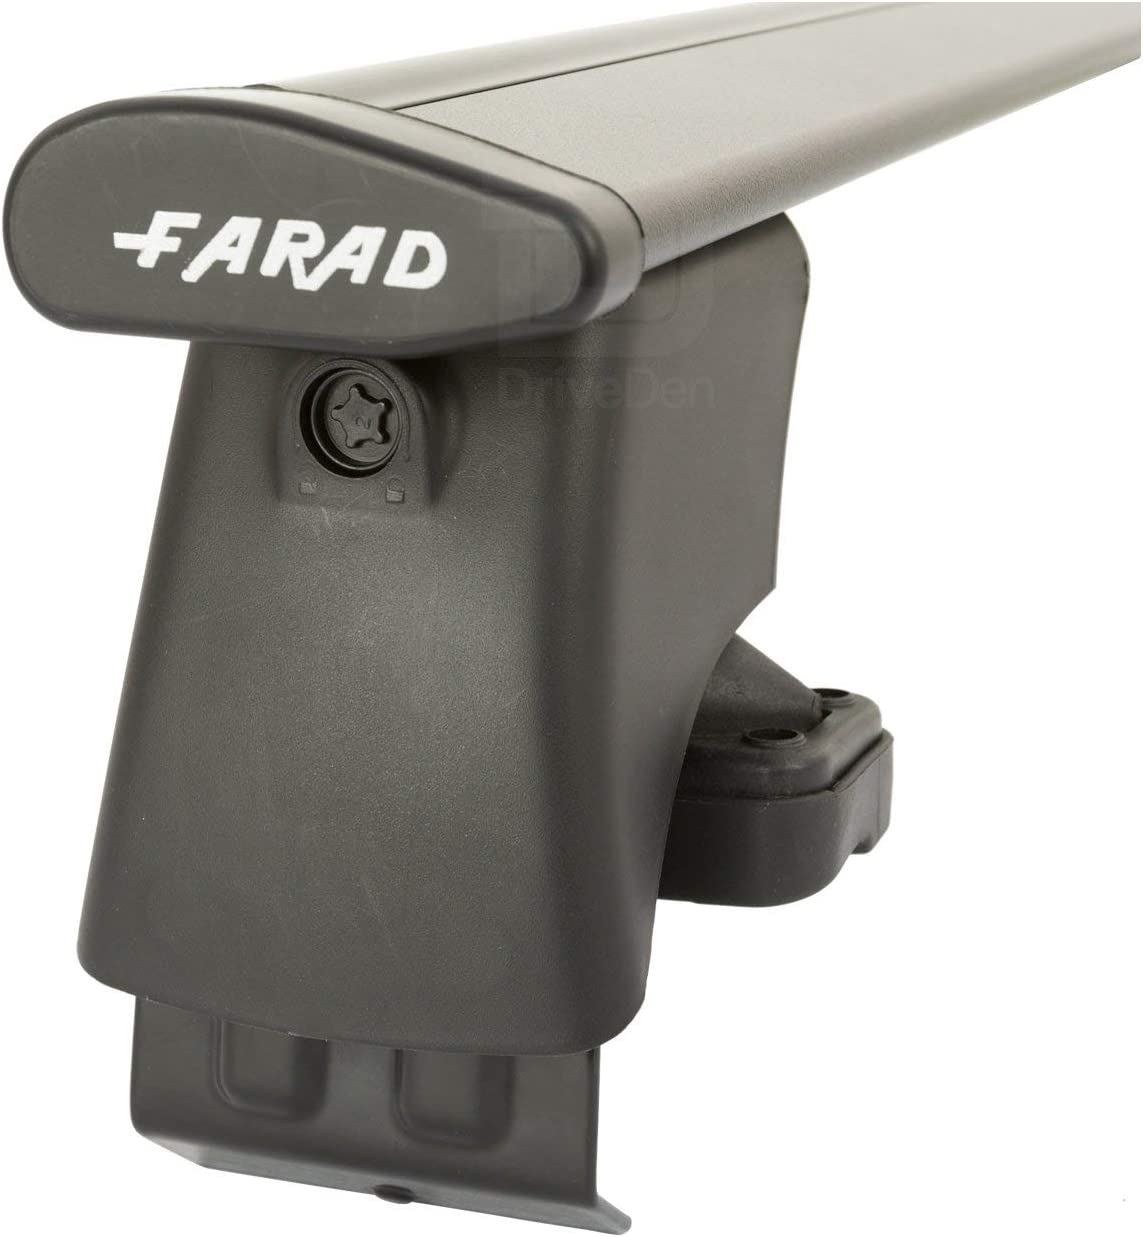 FARAD-Kit H2 per barre portatutto - Ford Ka 1997-2009 (senza corrimano)